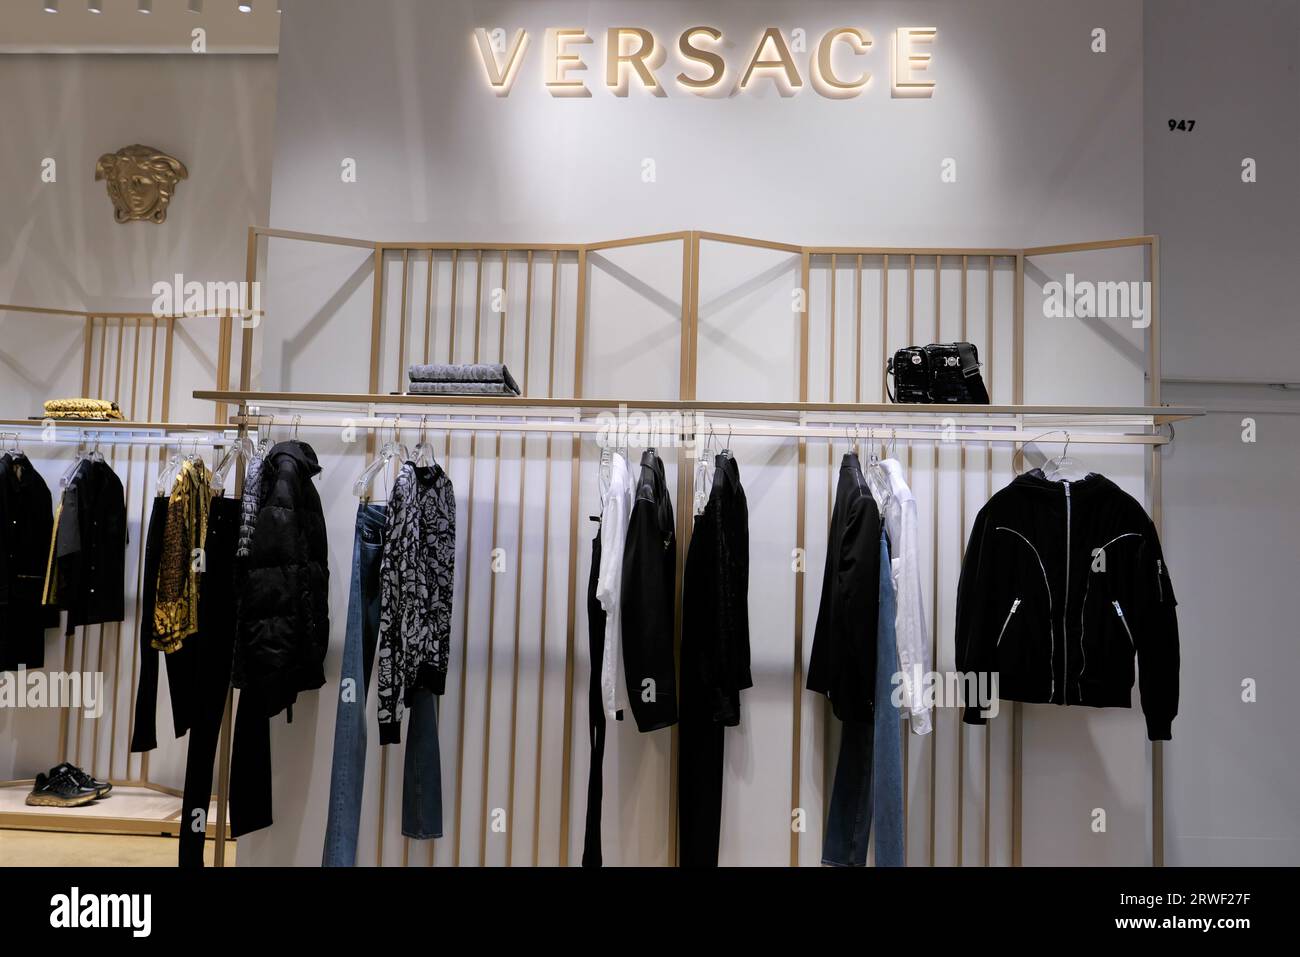 Versace clothing immagini e fotografie stock ad alta risoluzione - Alamy